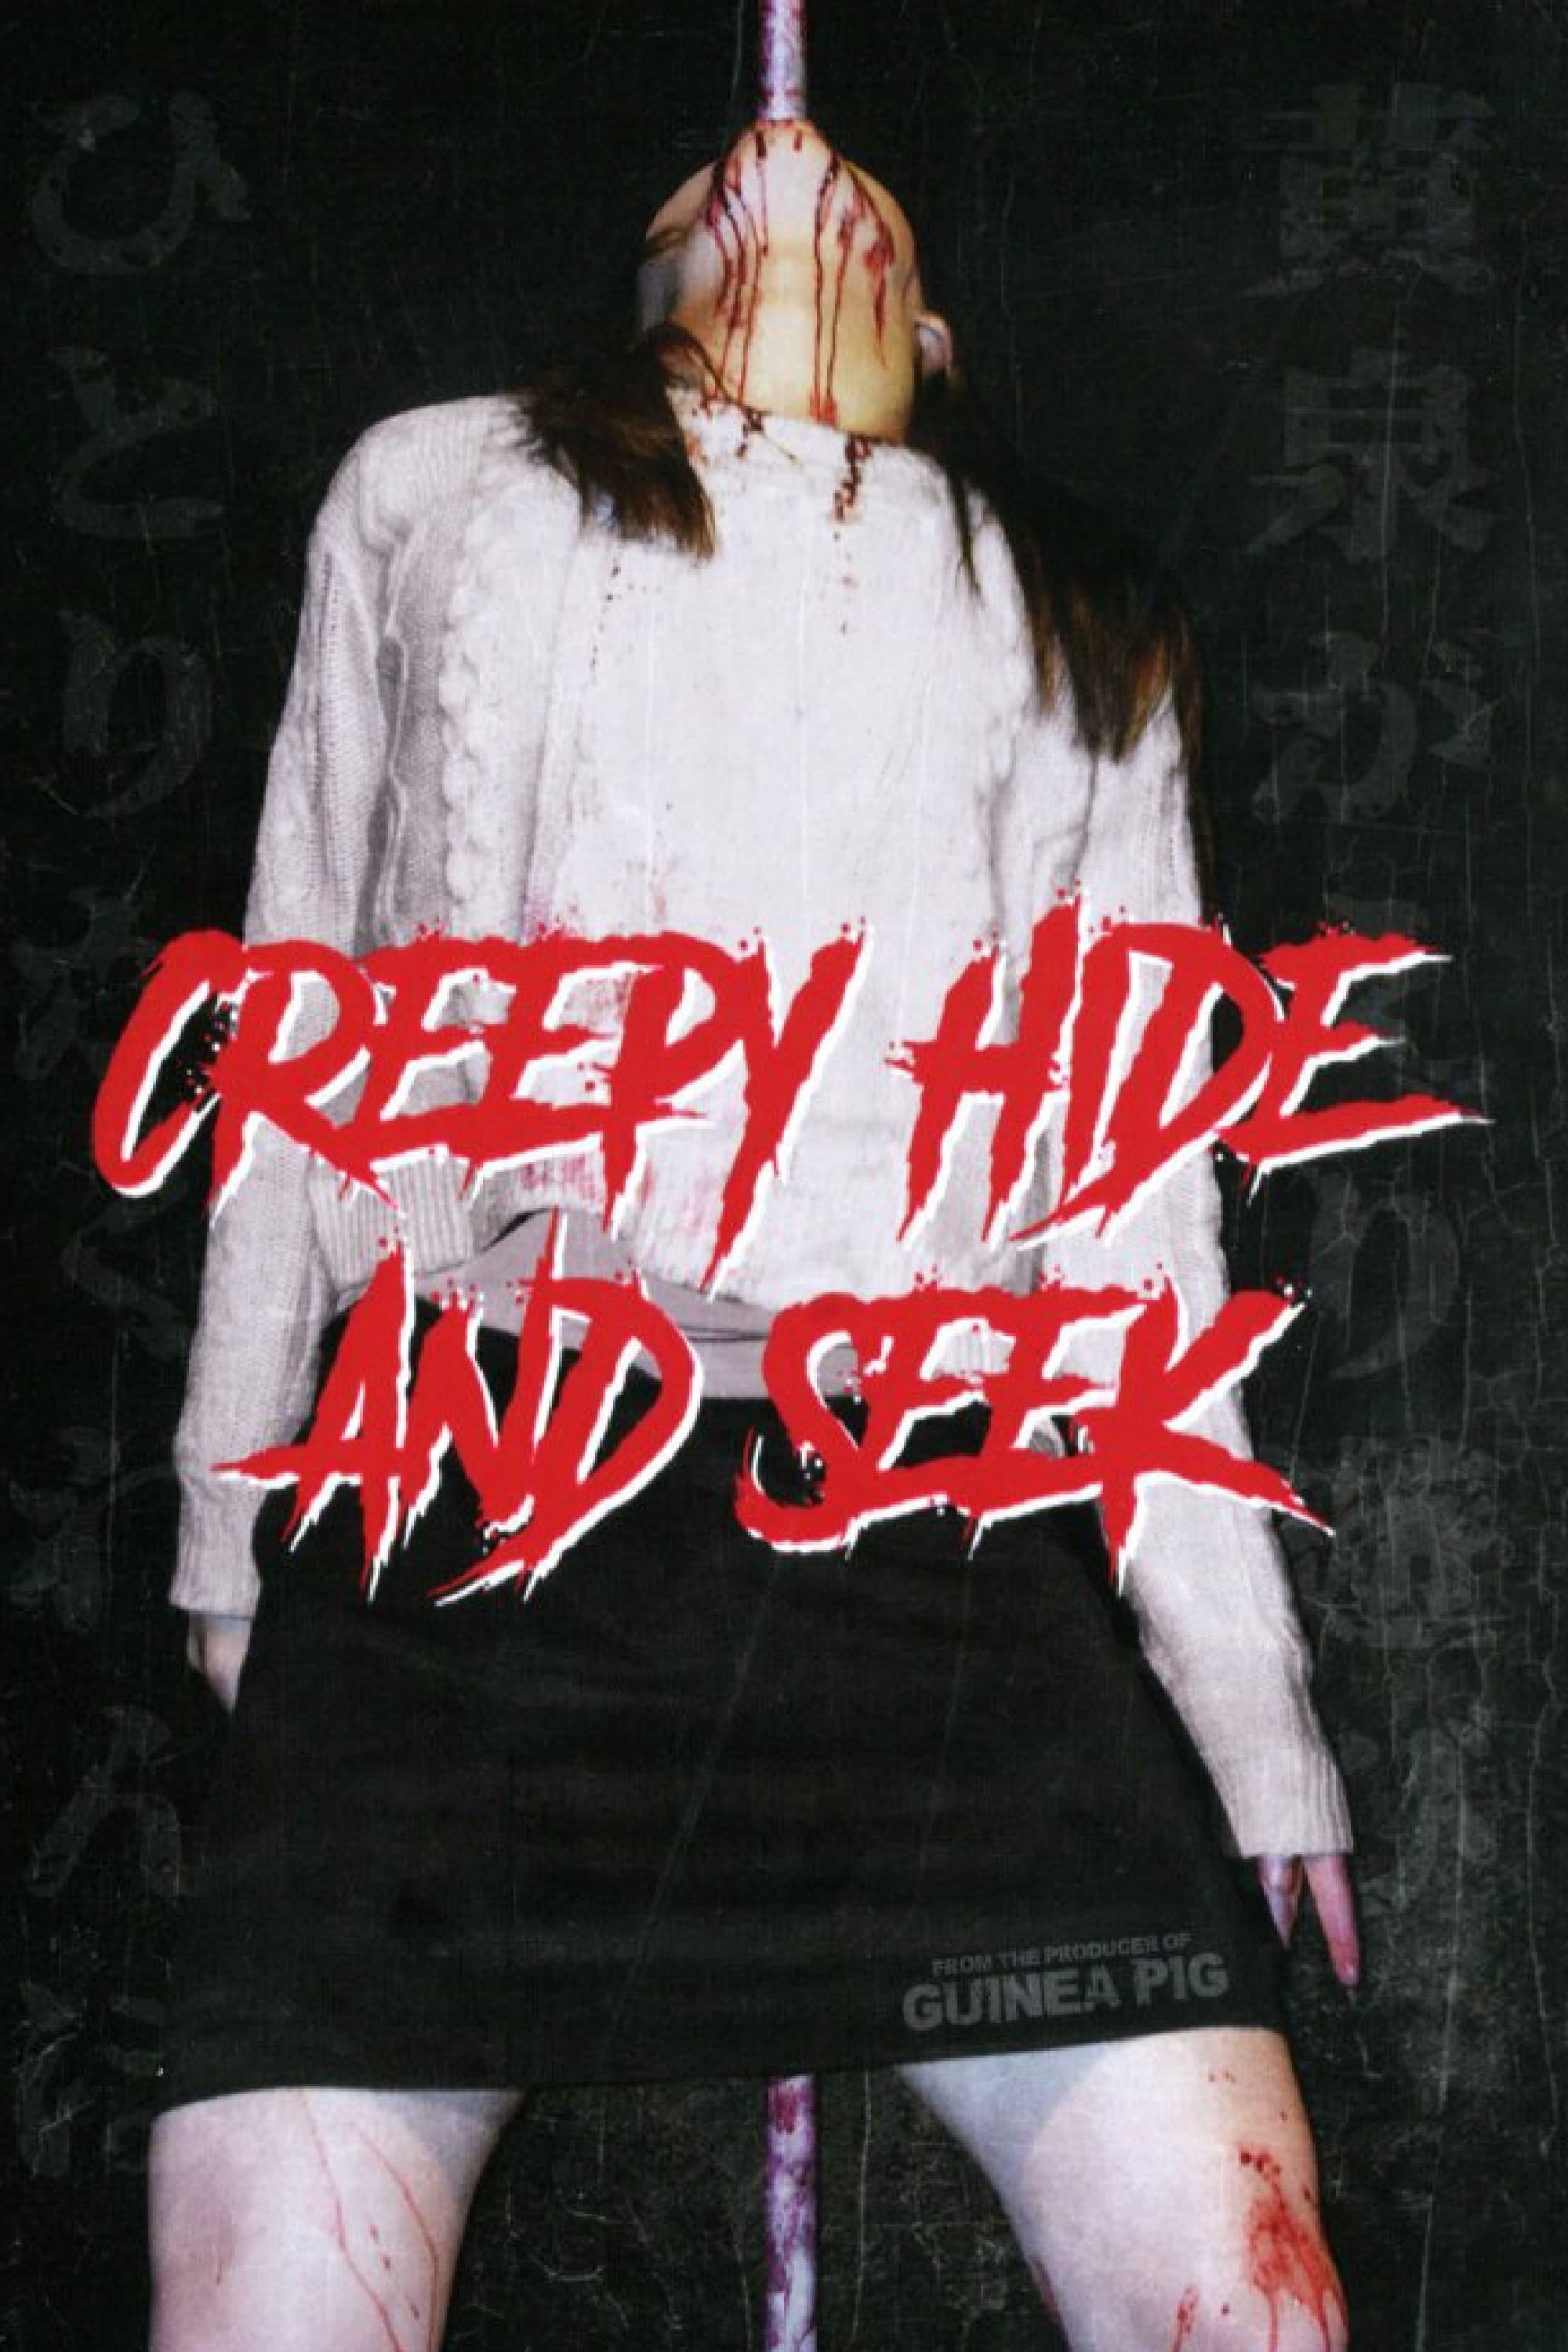 Creepy Hide and Seek